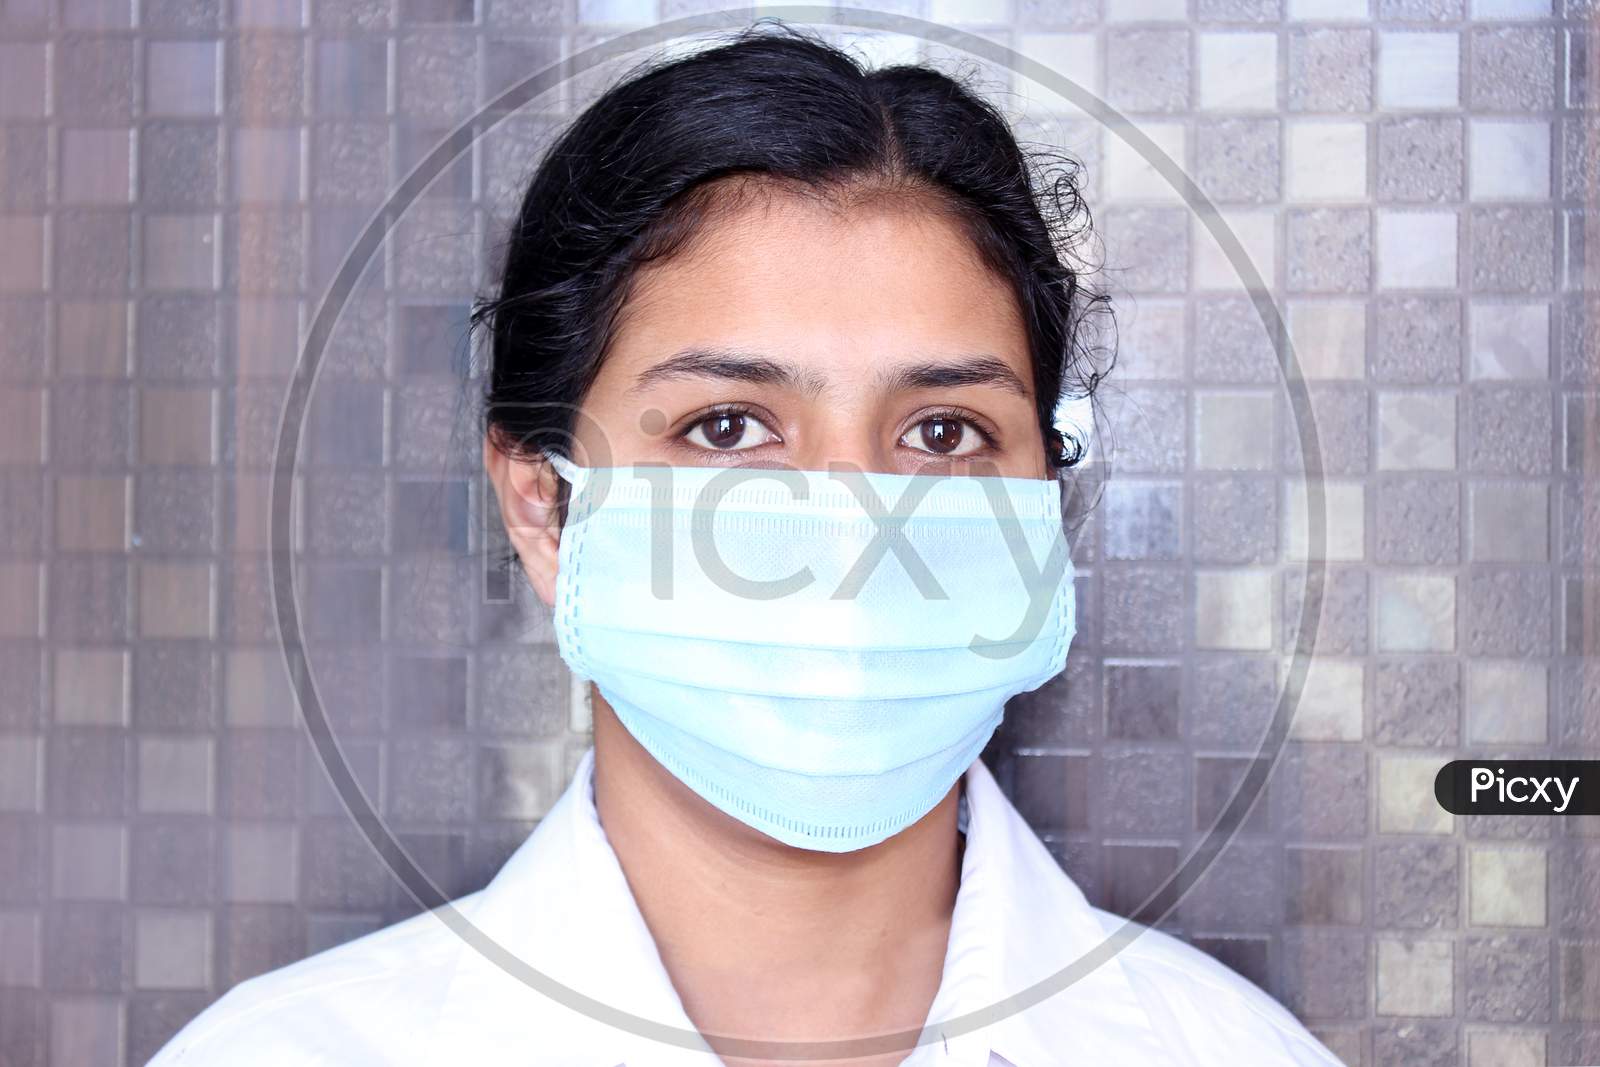 Mask on face for corona virus